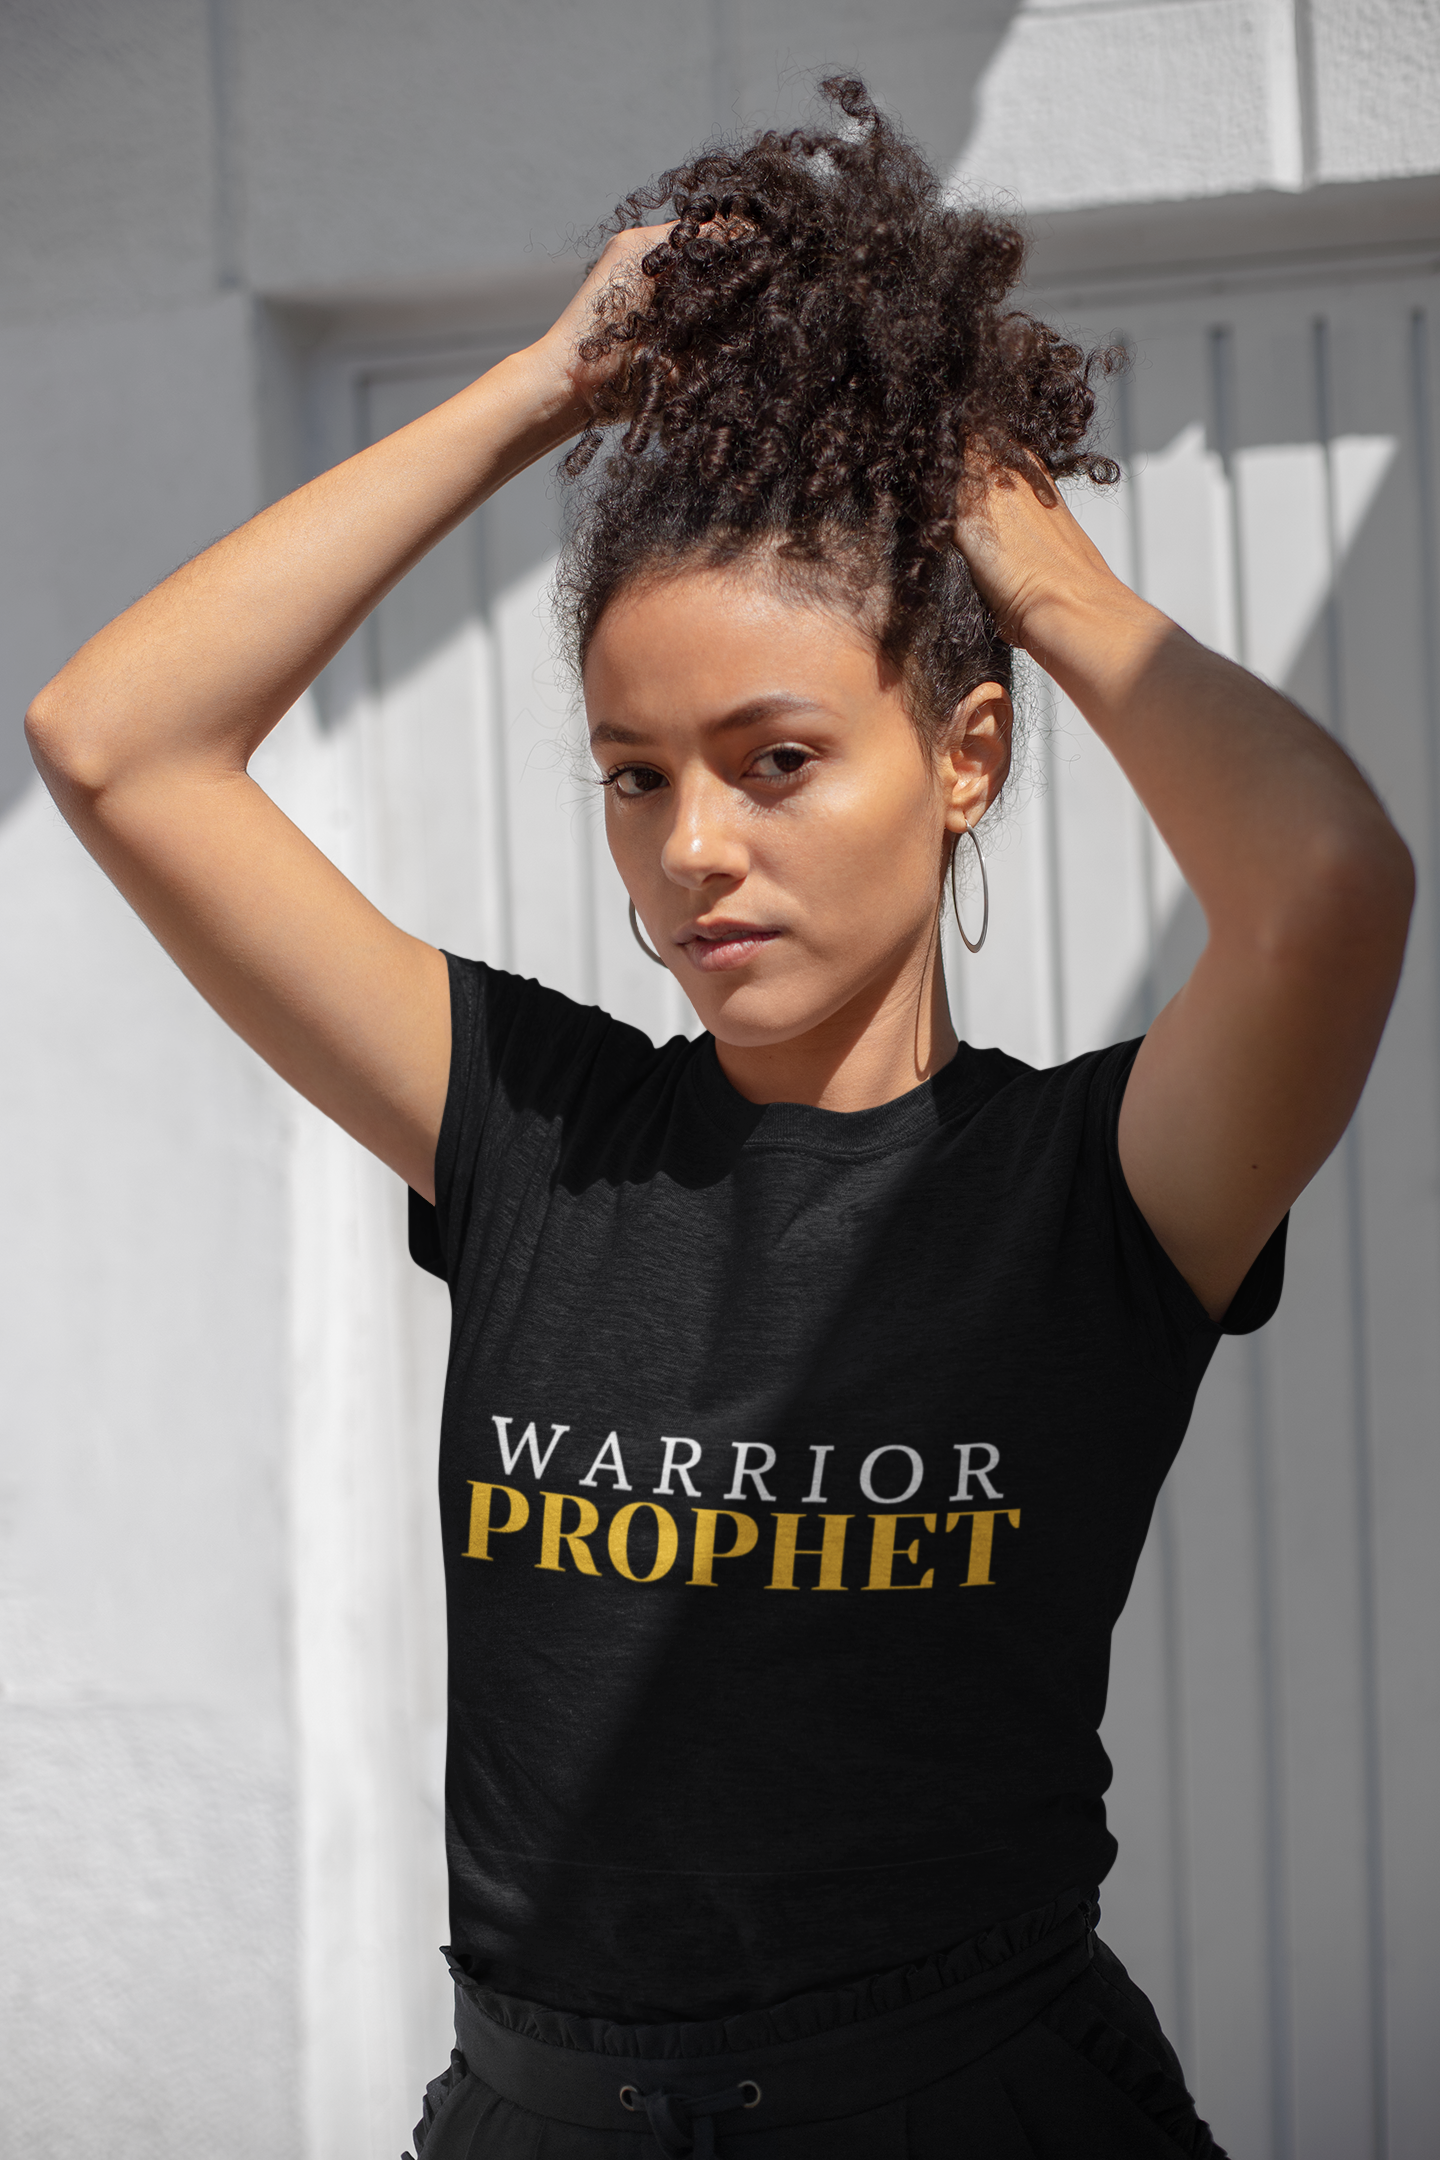 Warrior Prophet t-shirt